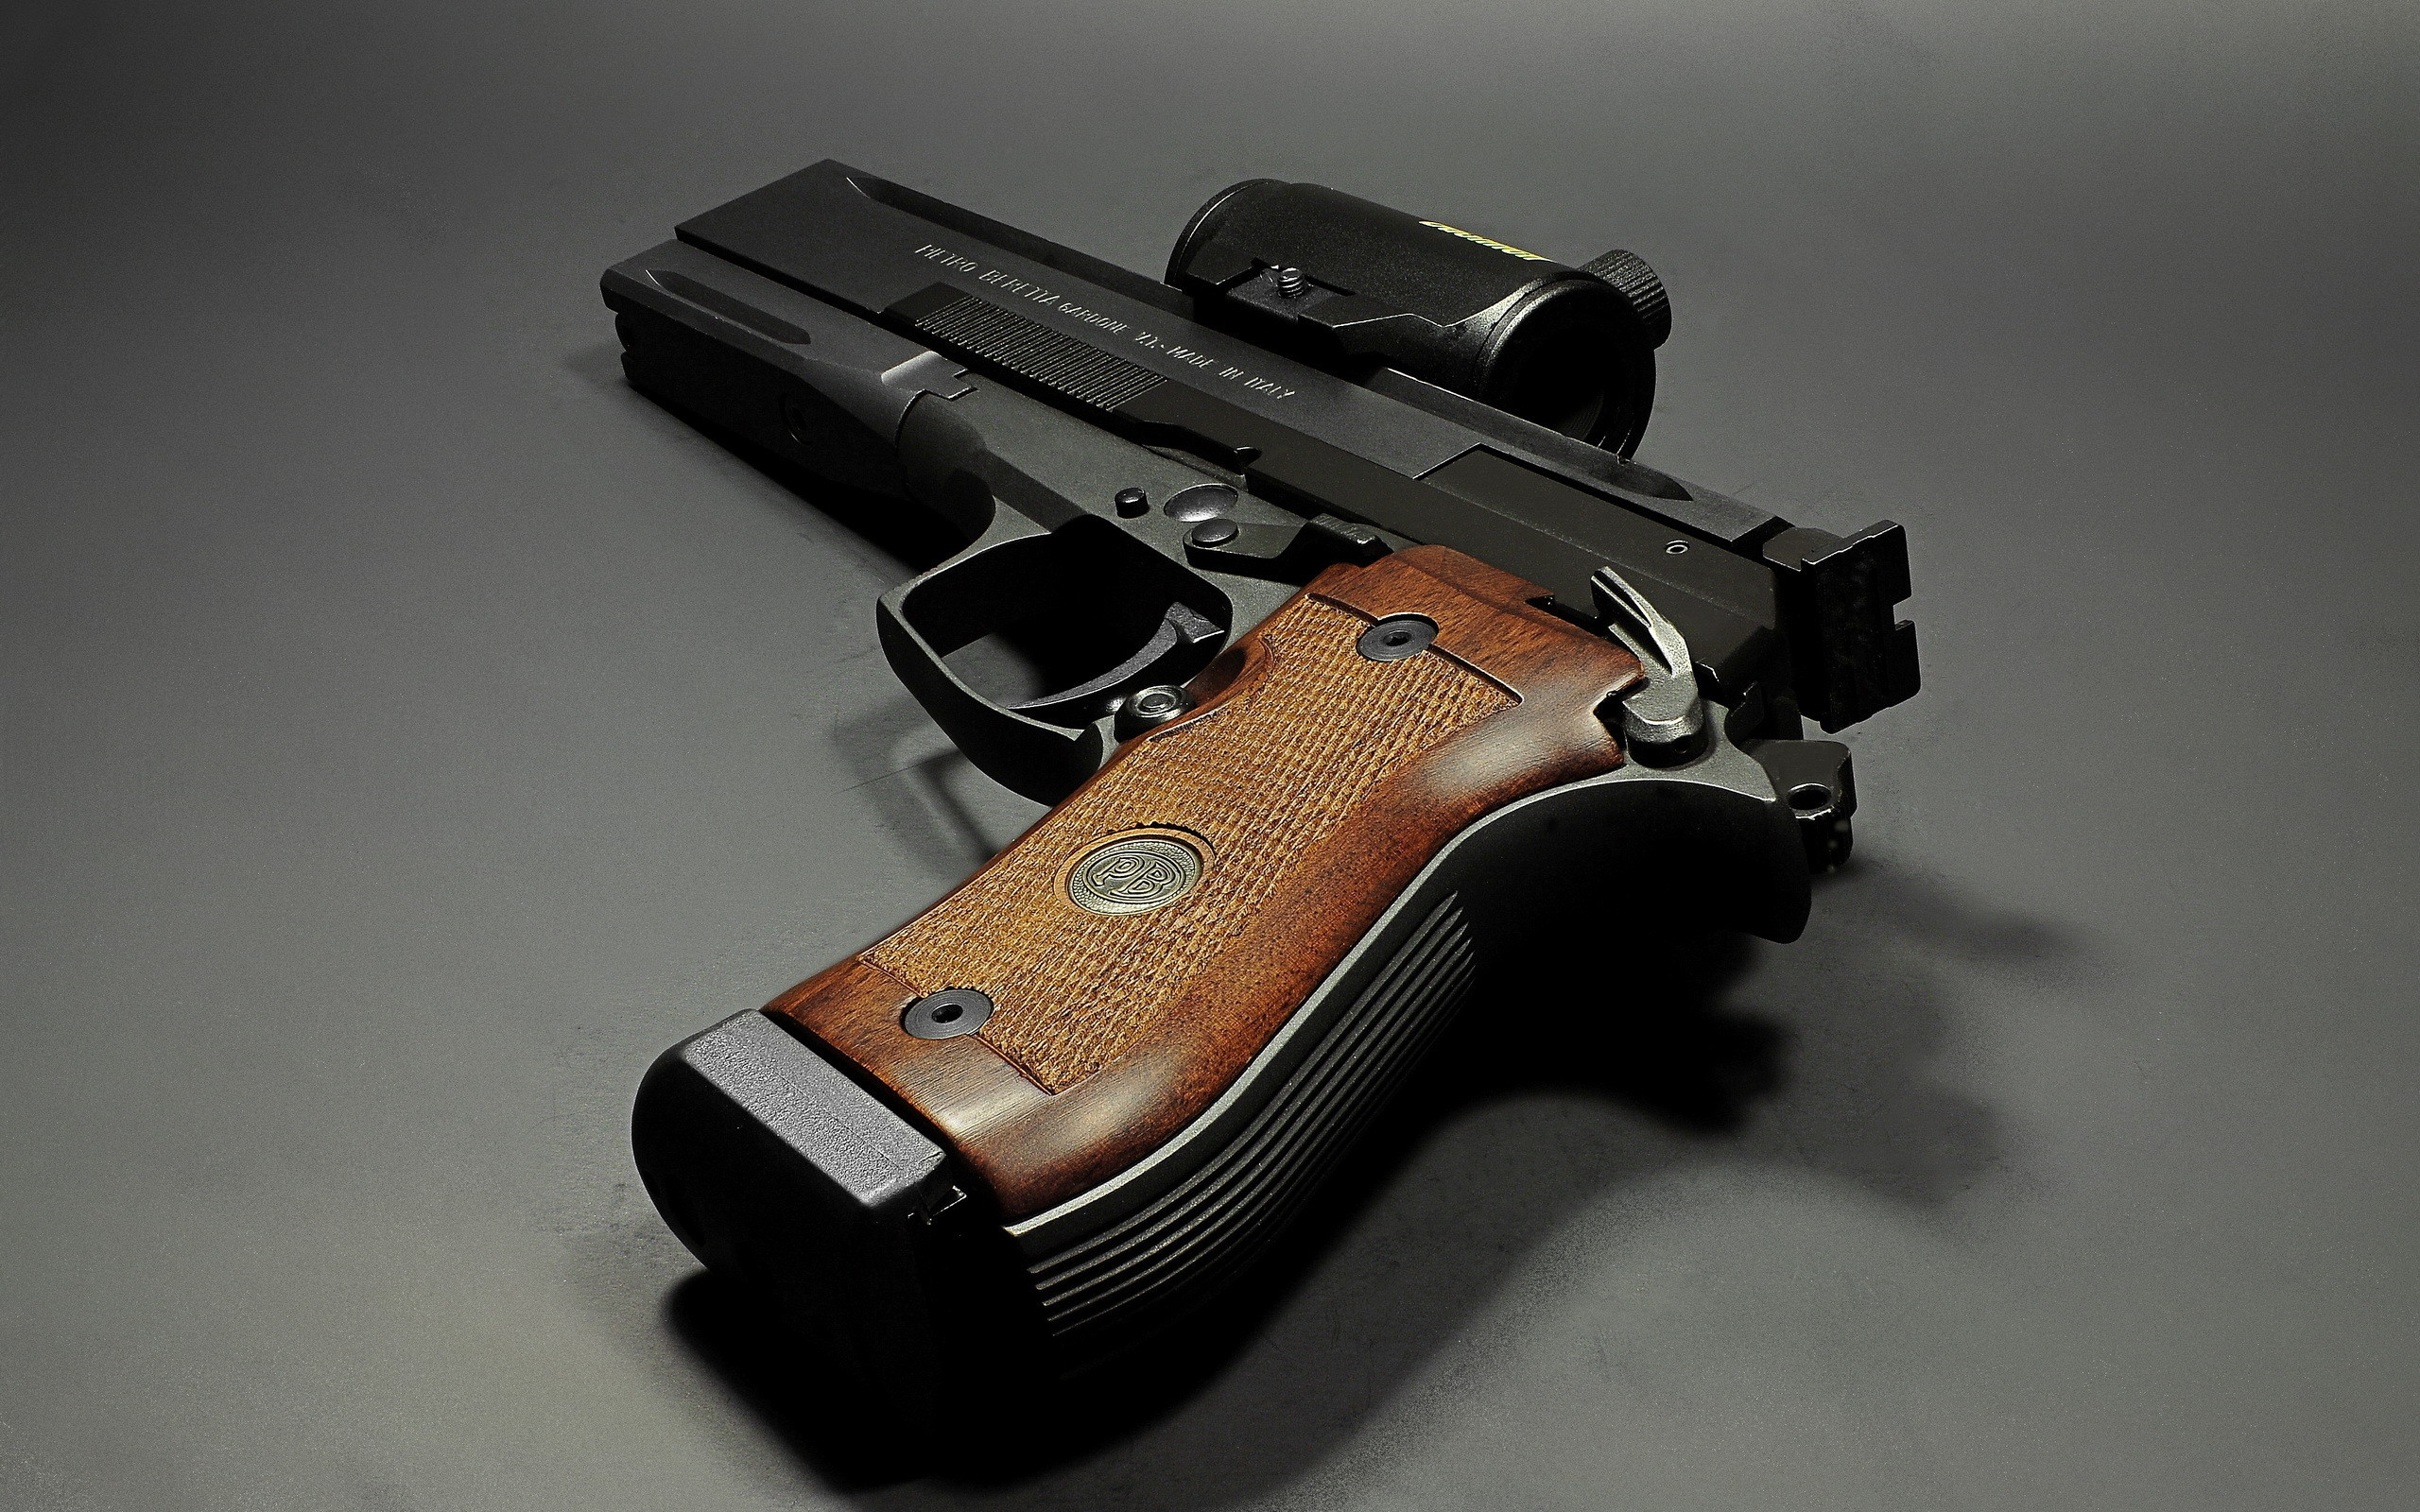 2560x1600 Beretta Pistol Wallpaper 7 - 2560 X 1600